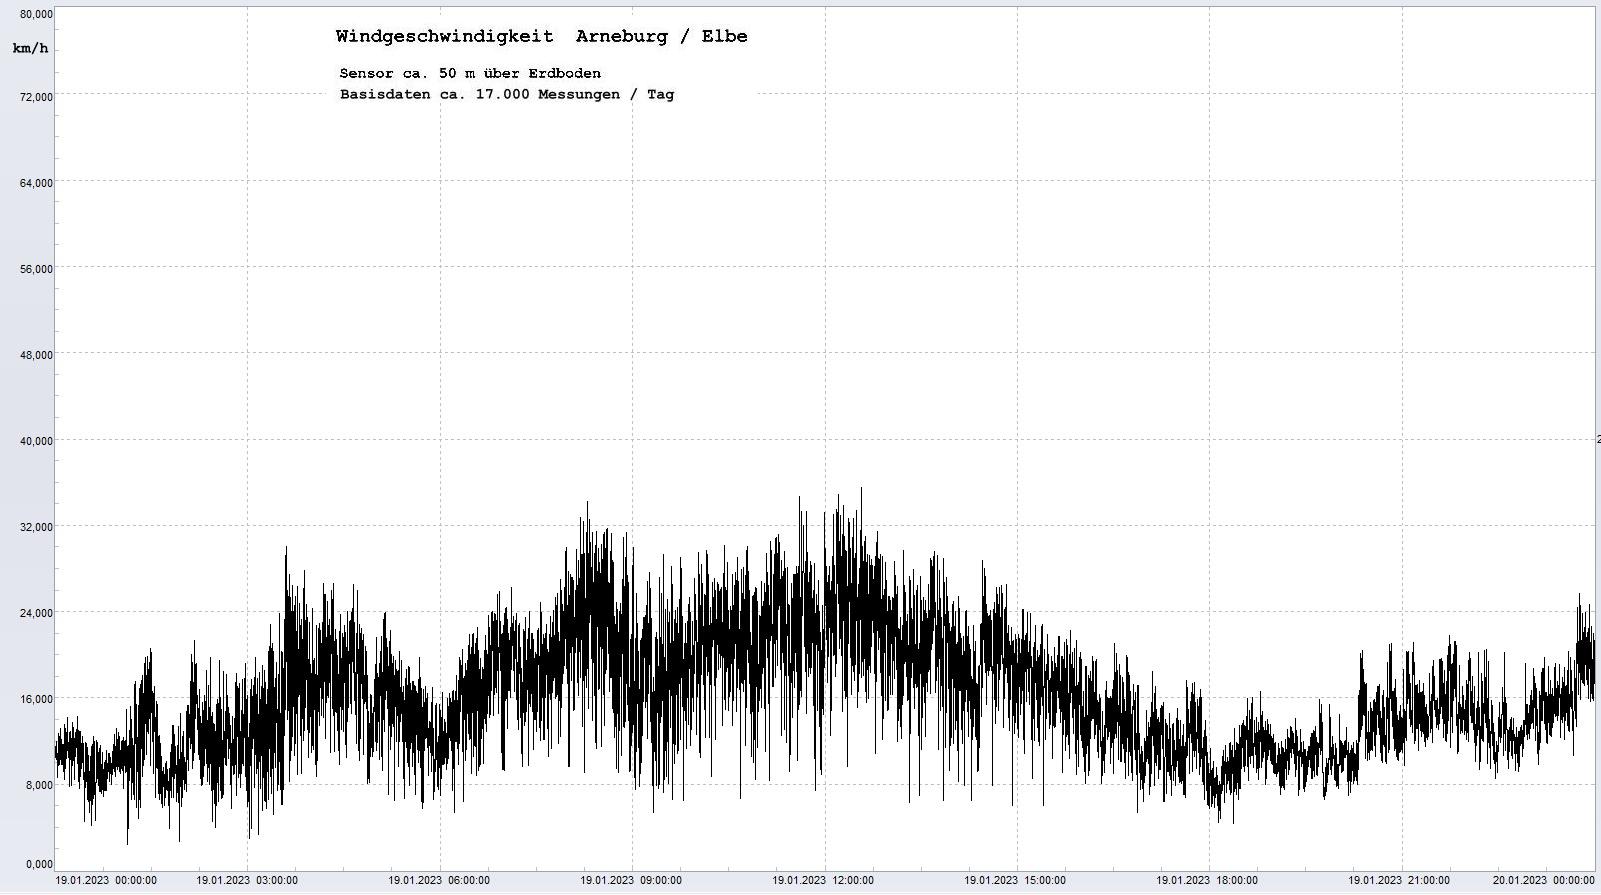 Arneburg Tages-Diagramm Winddaten, 19.01.2023
  Diagramm, Sensor auf Gebude, ca. 50 m ber Erdboden, Basis: 5s-Aufzeichnung